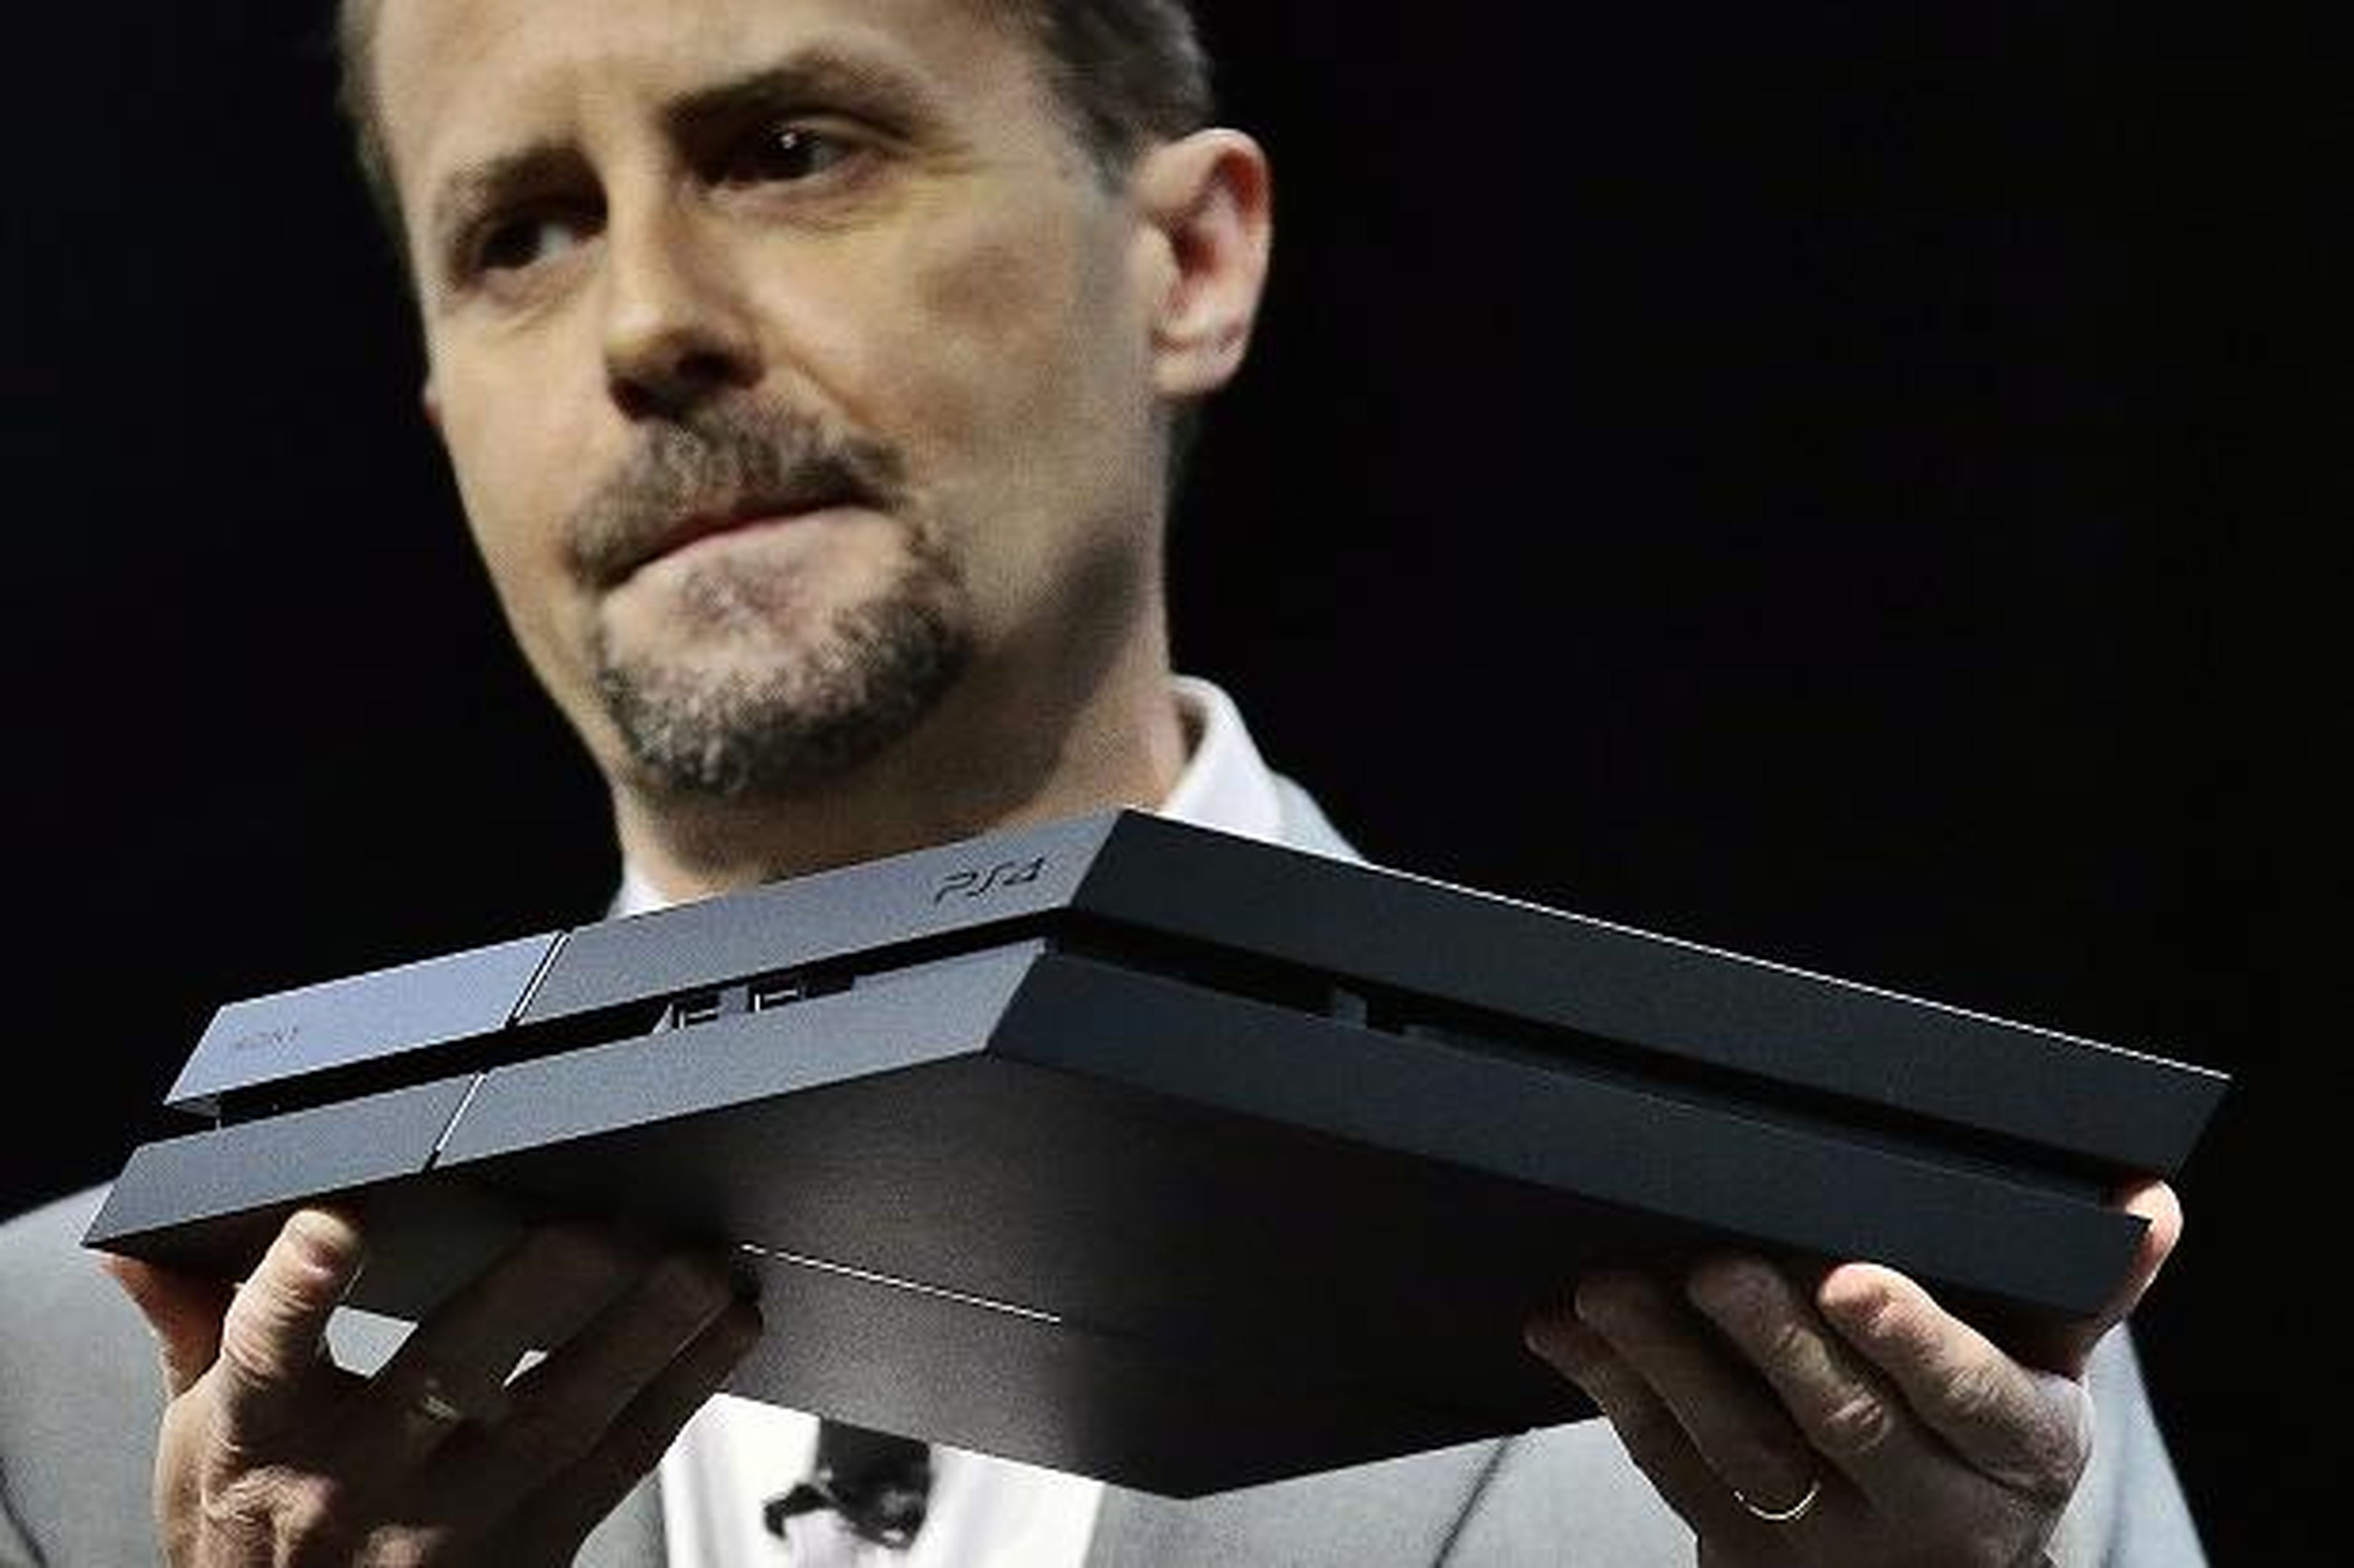 Sony cree que PS4 puede superar las ventas de PS3